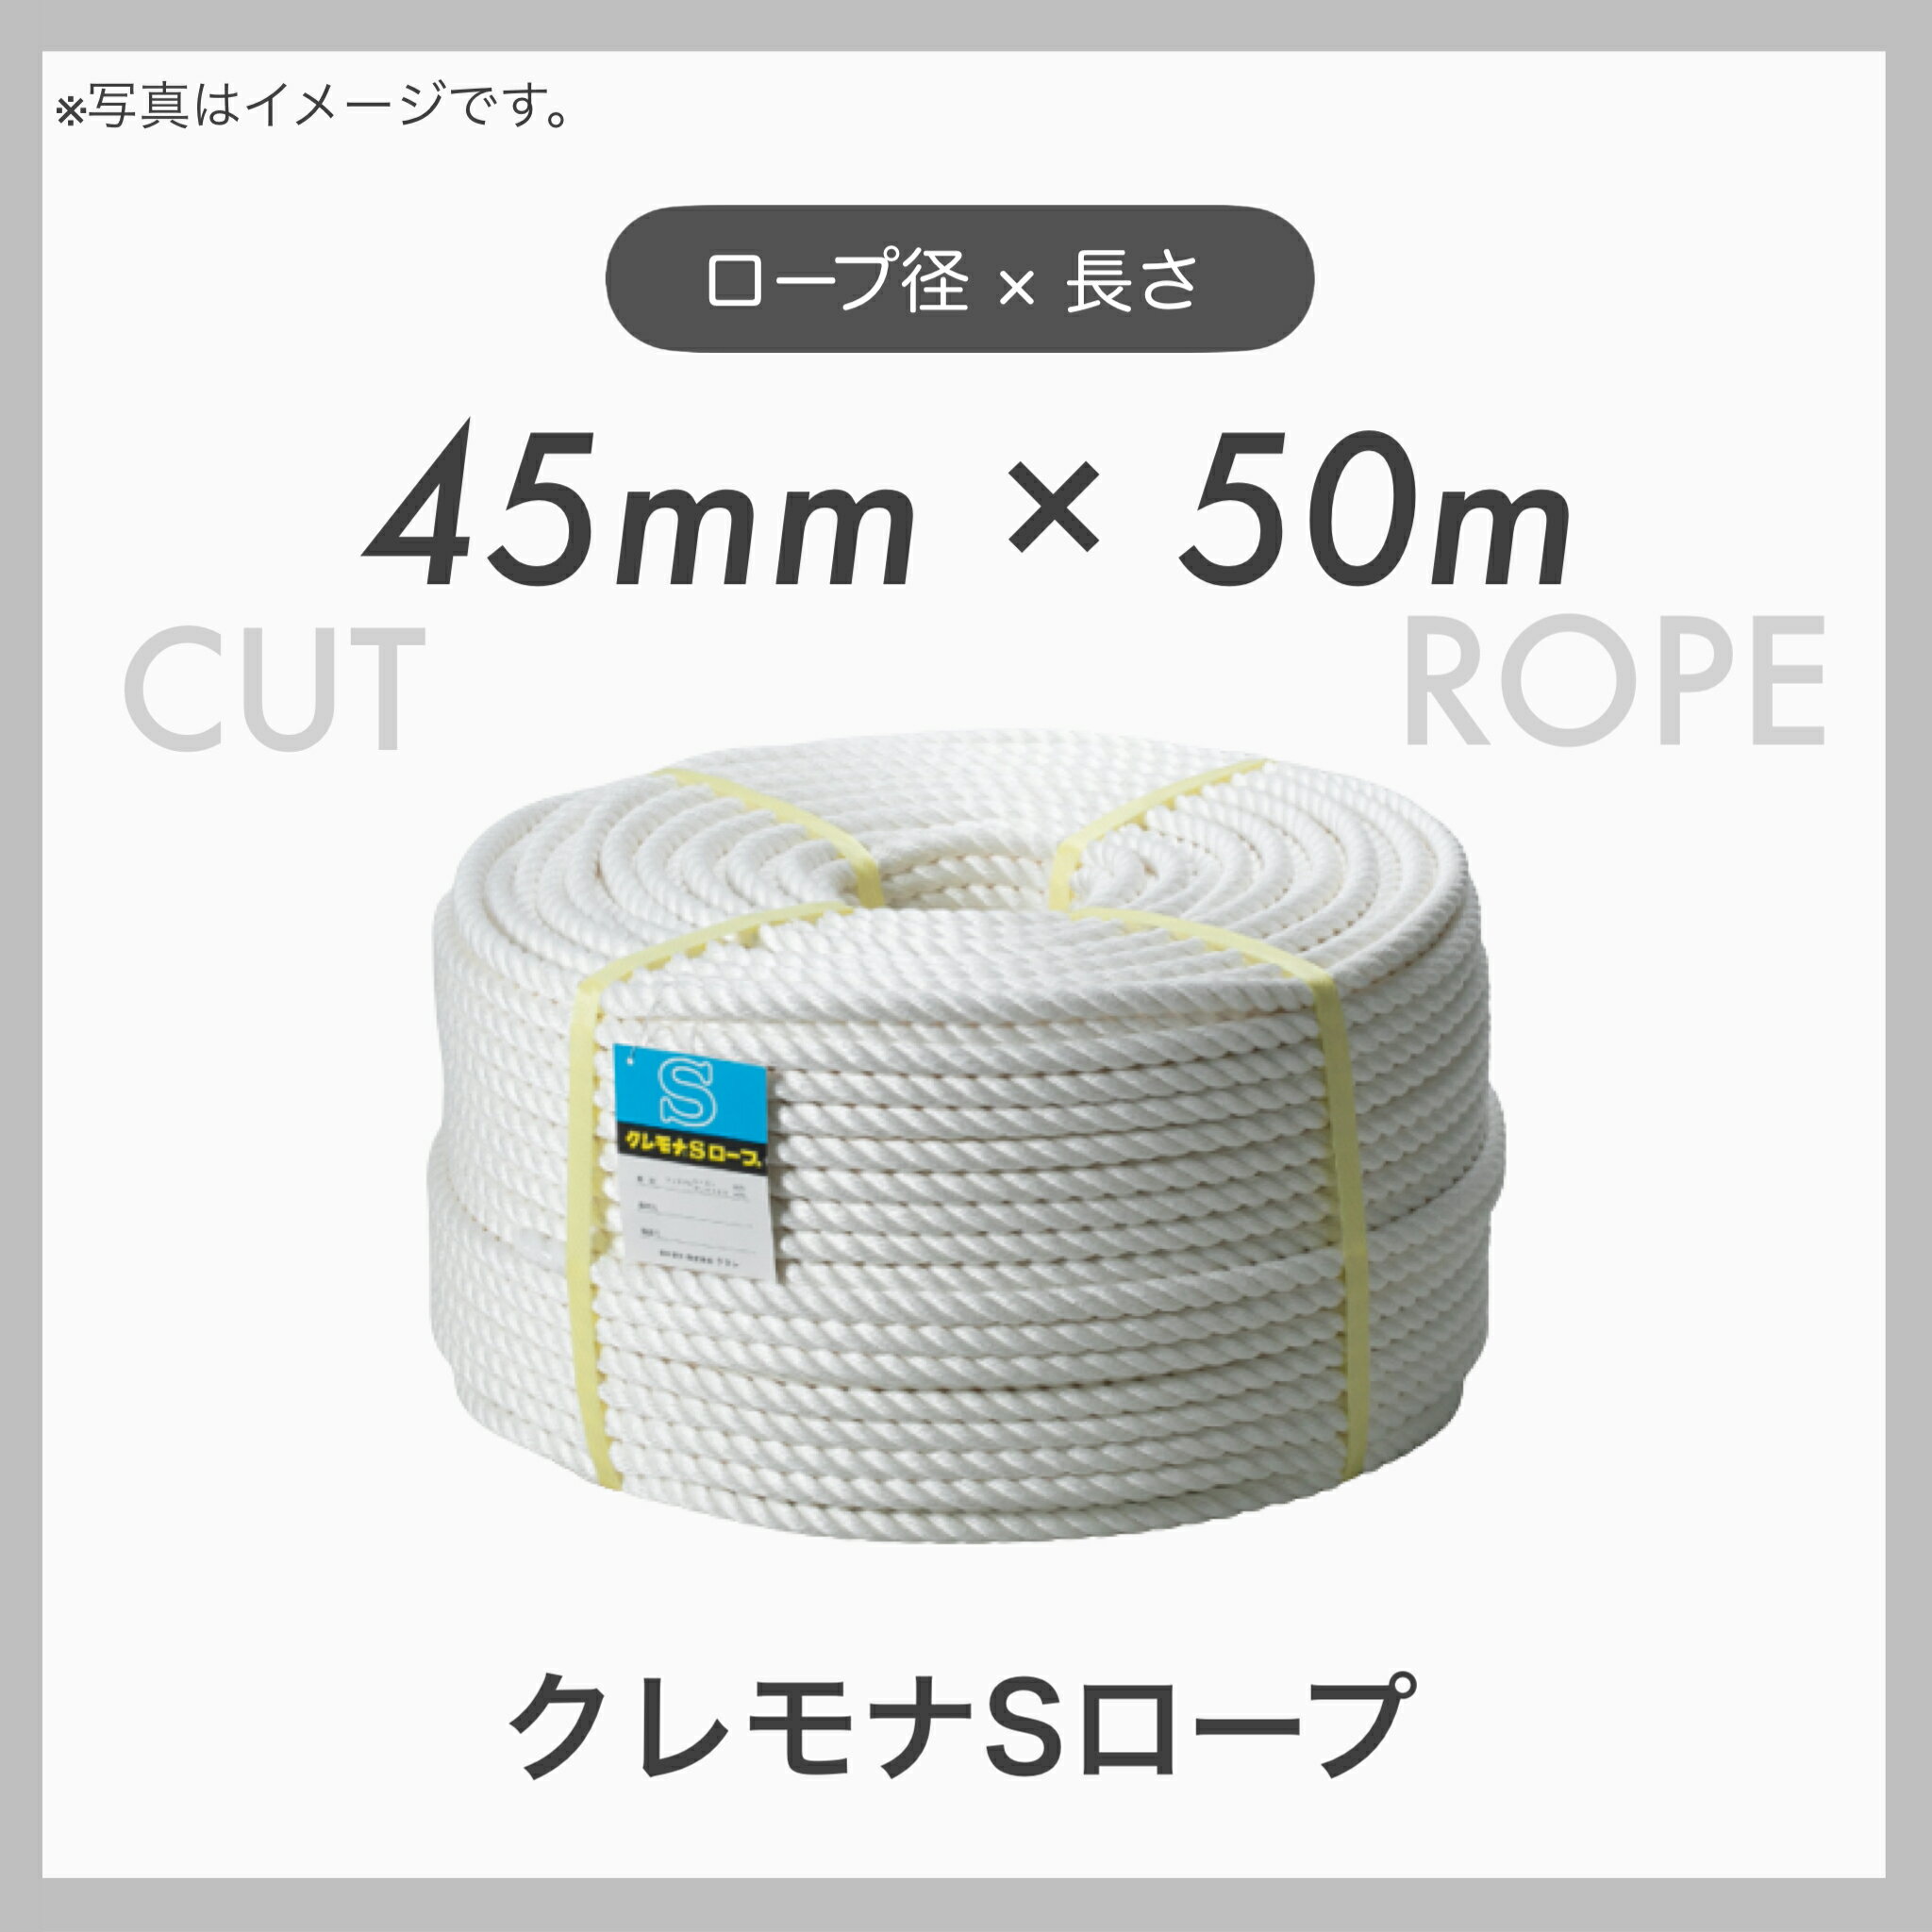  クレモナロープ クレモナSロープ 繊維ロープ 合繊ロープ 45mm×50m 直径45mm 長さ50m